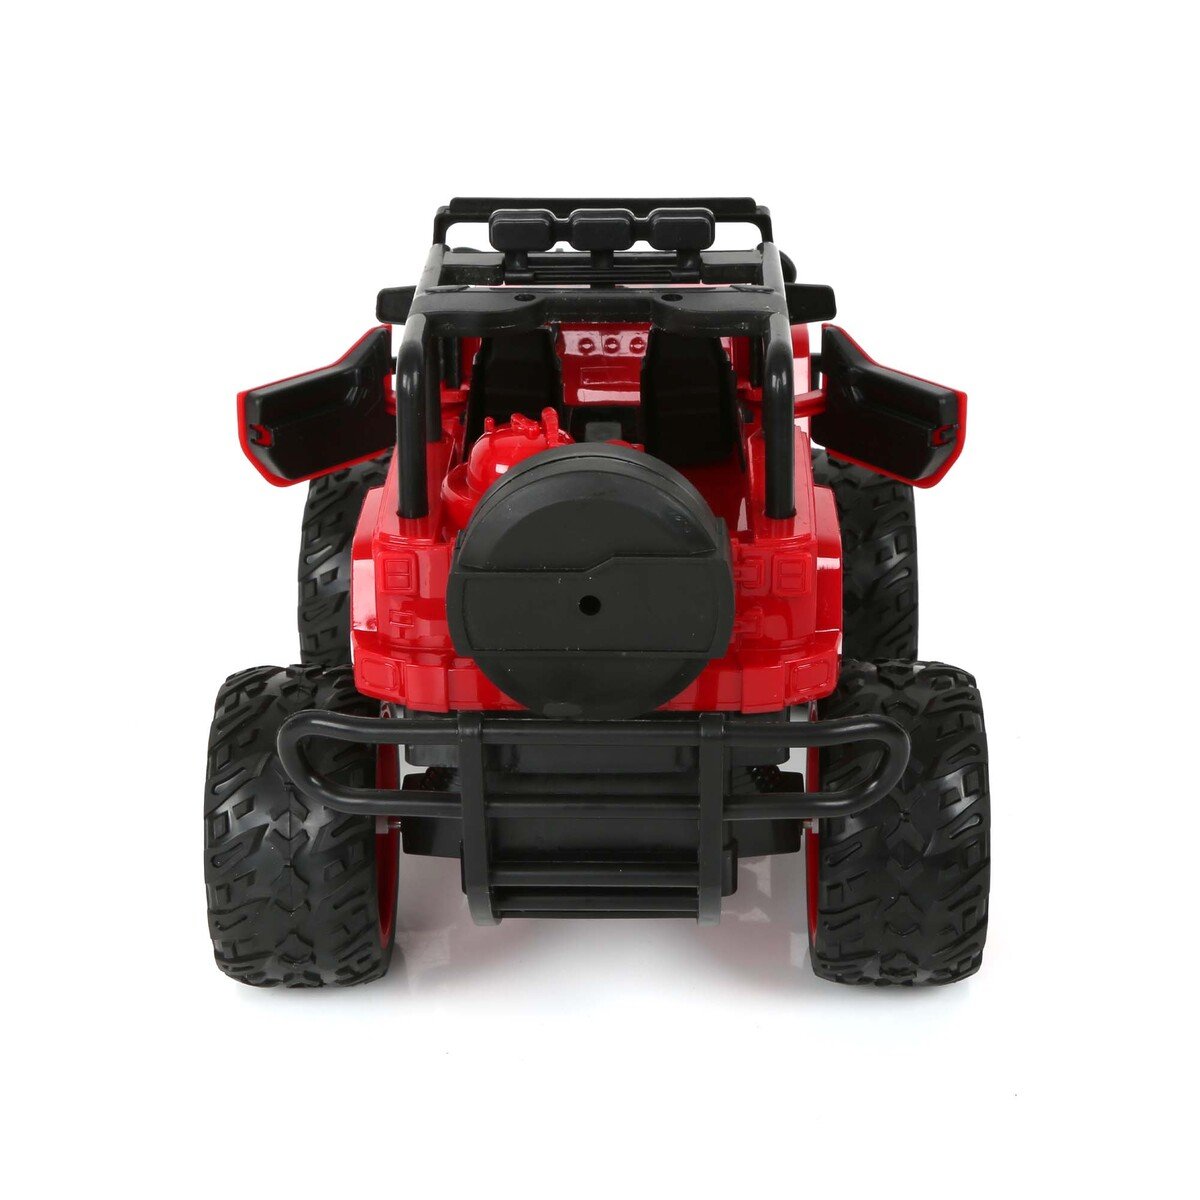 سكيد فيوجن سيارة لعبة للأطفال قابلة للشحن ، من عمر 3 سنوات فيما فوق ، RD513-1